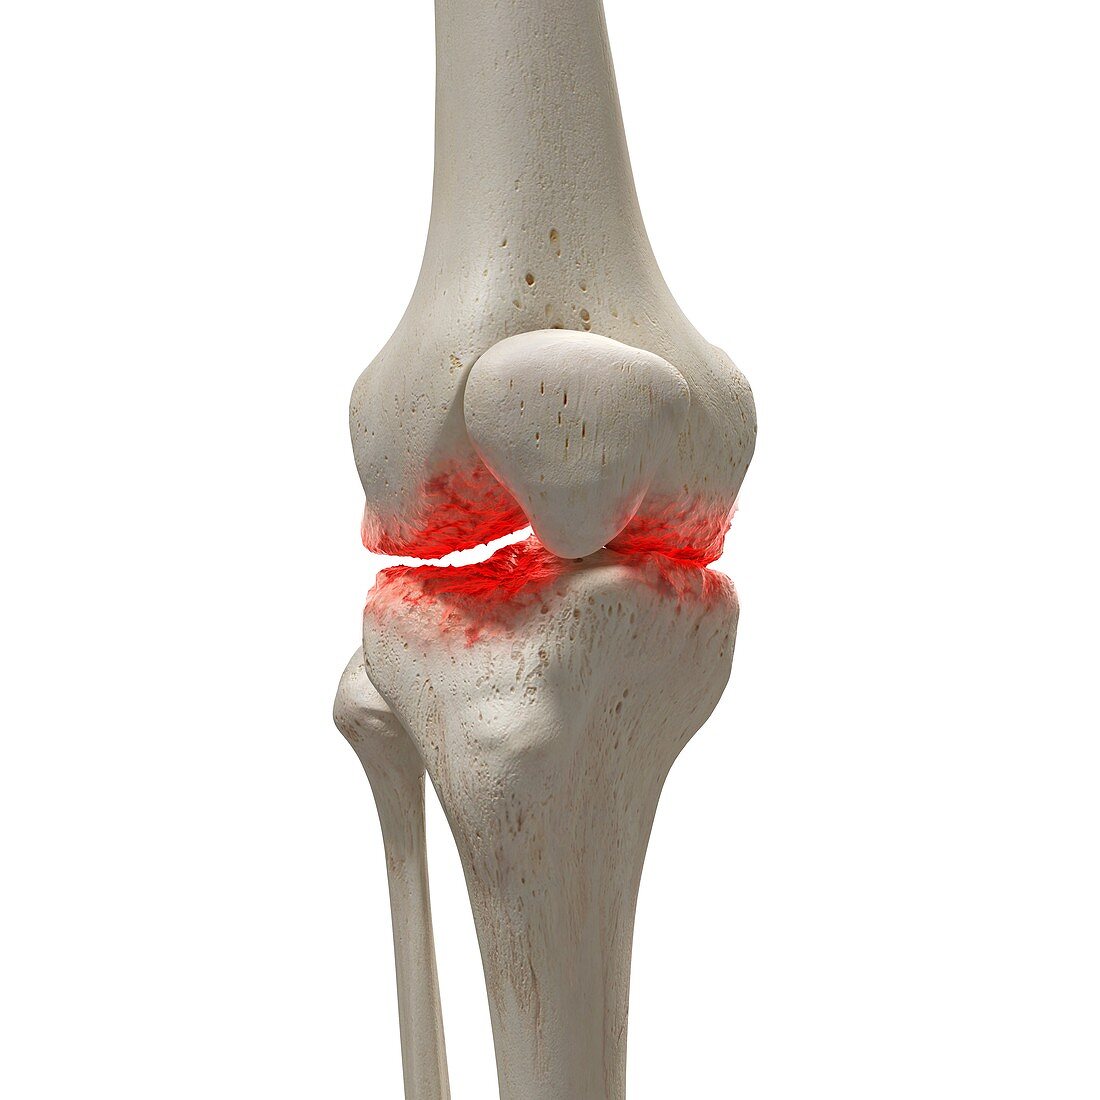 Arthritis in the knee, illustration